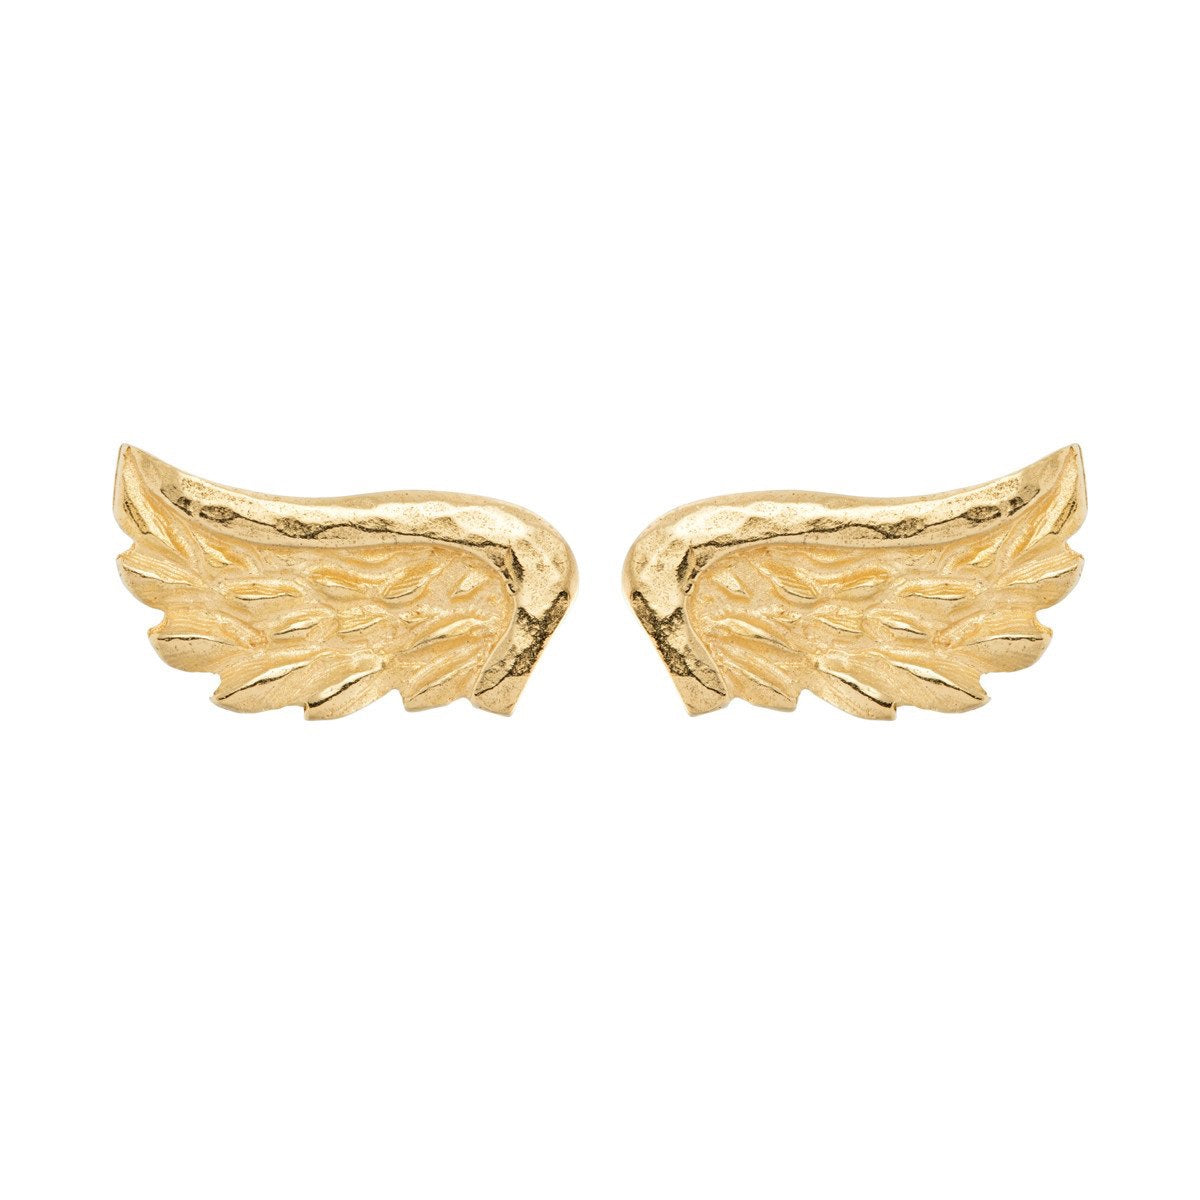 Venetian Wing Stud Earrings by Sophie Harley